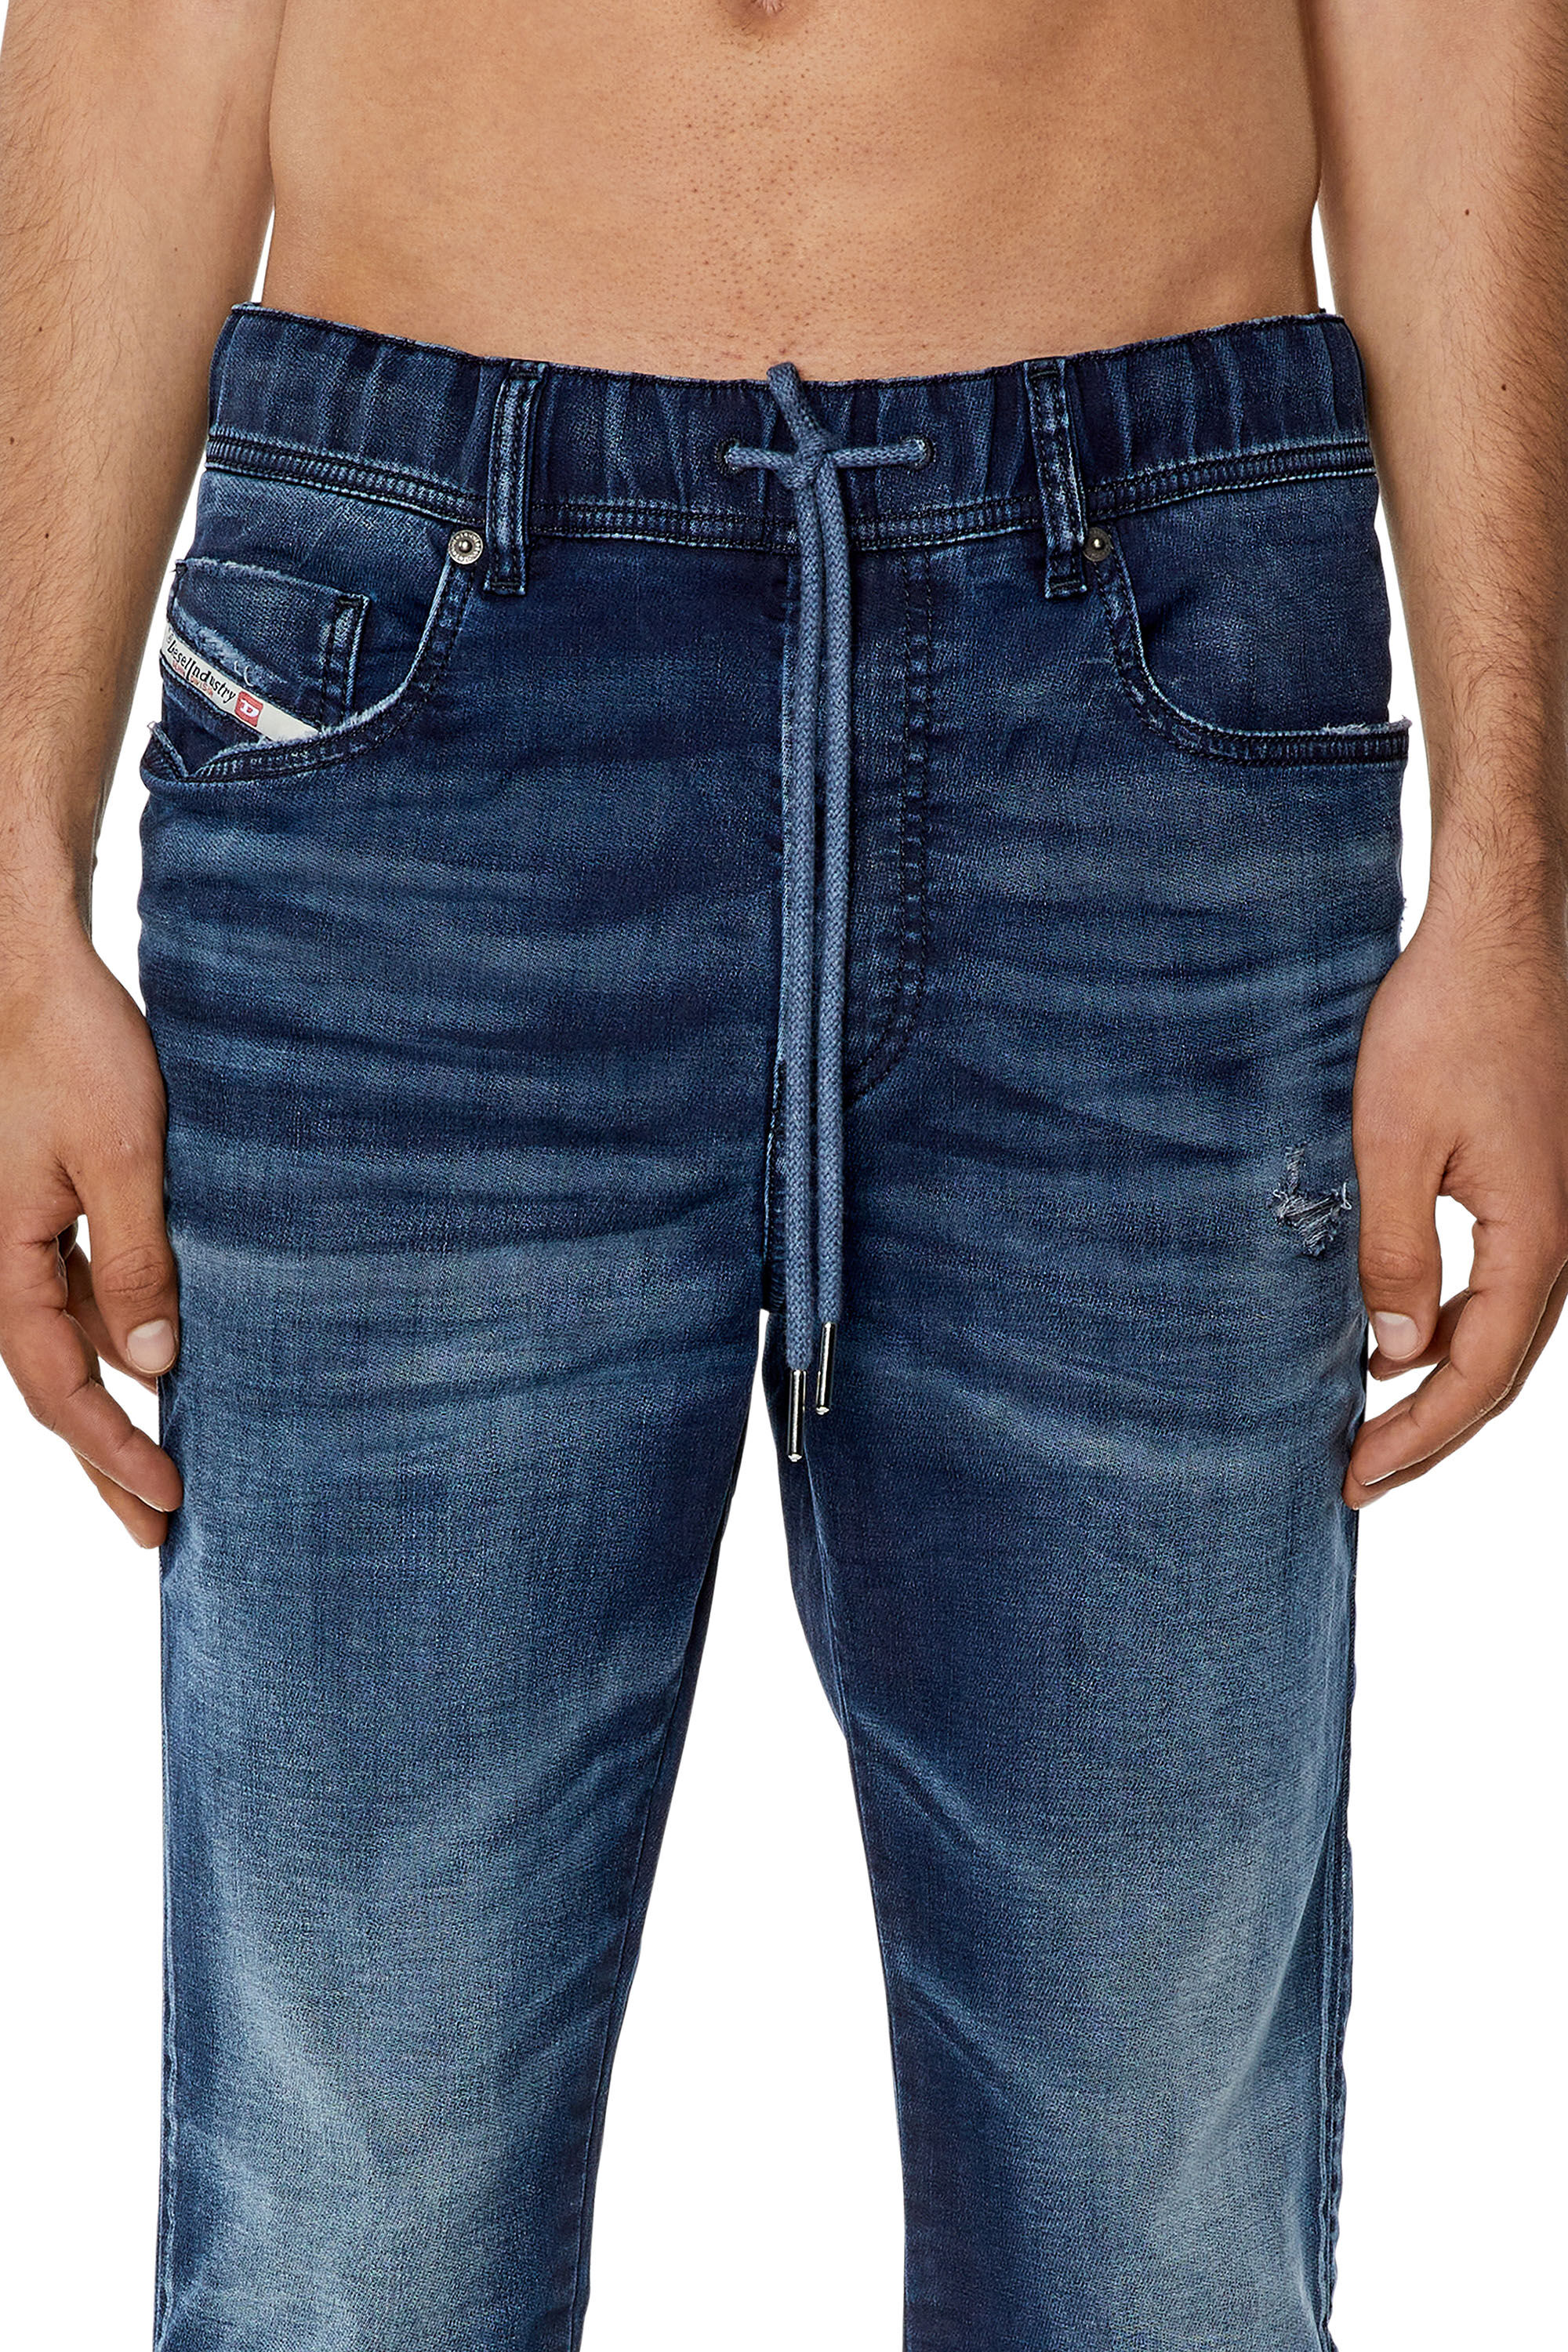 Men's Slim Jeans | Dark blue | Diesel E-Spender JoggJeans®